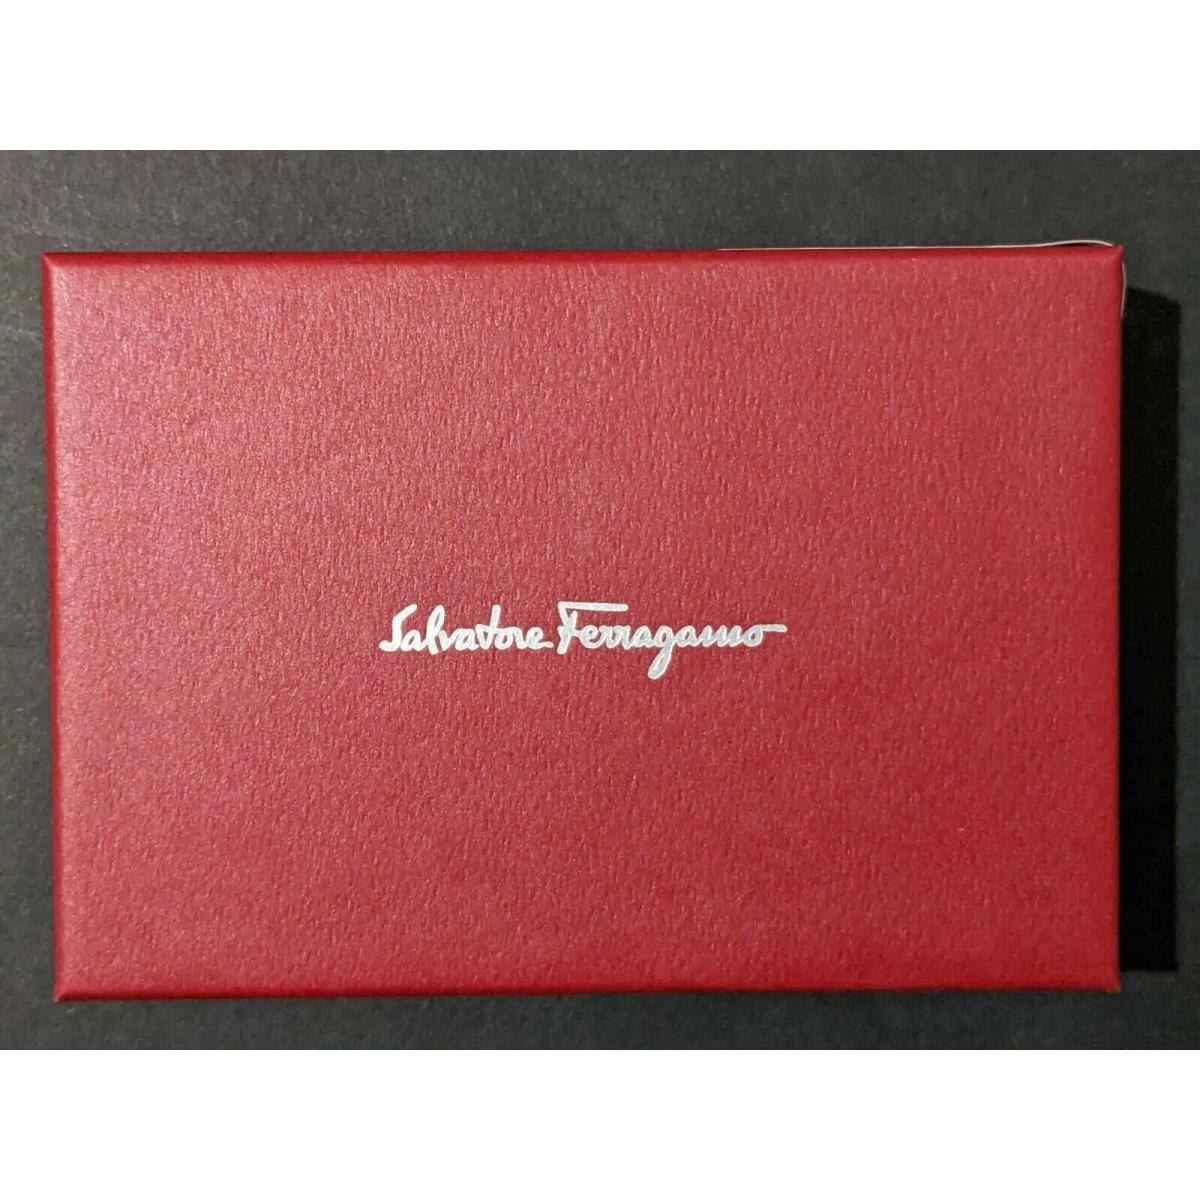 Salvatore Ferragamo wallet  - Black 3